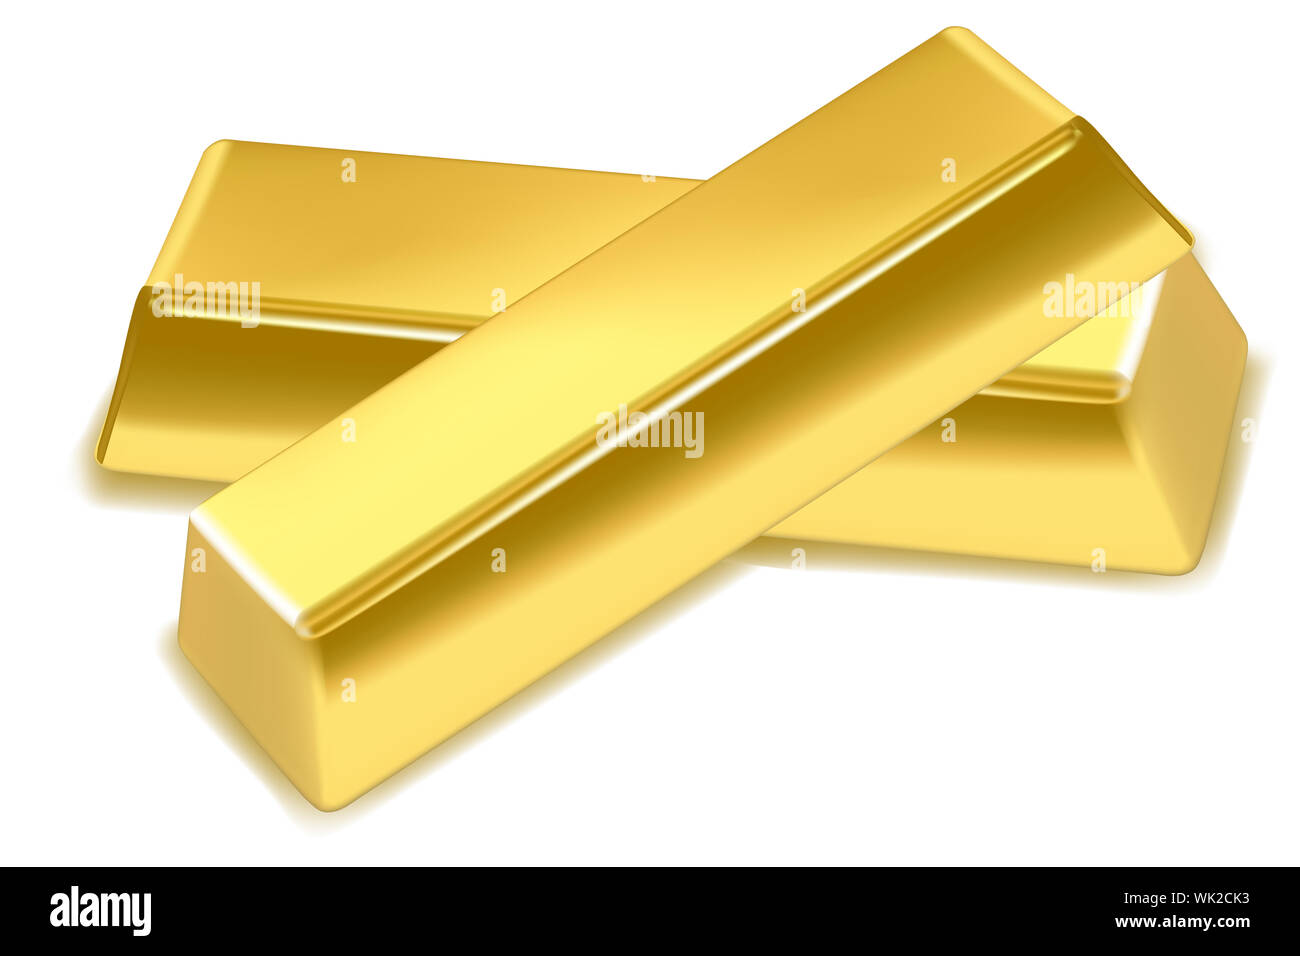 Abbildung von Goldbarren auf isolierte Hintergrund Stockfoto